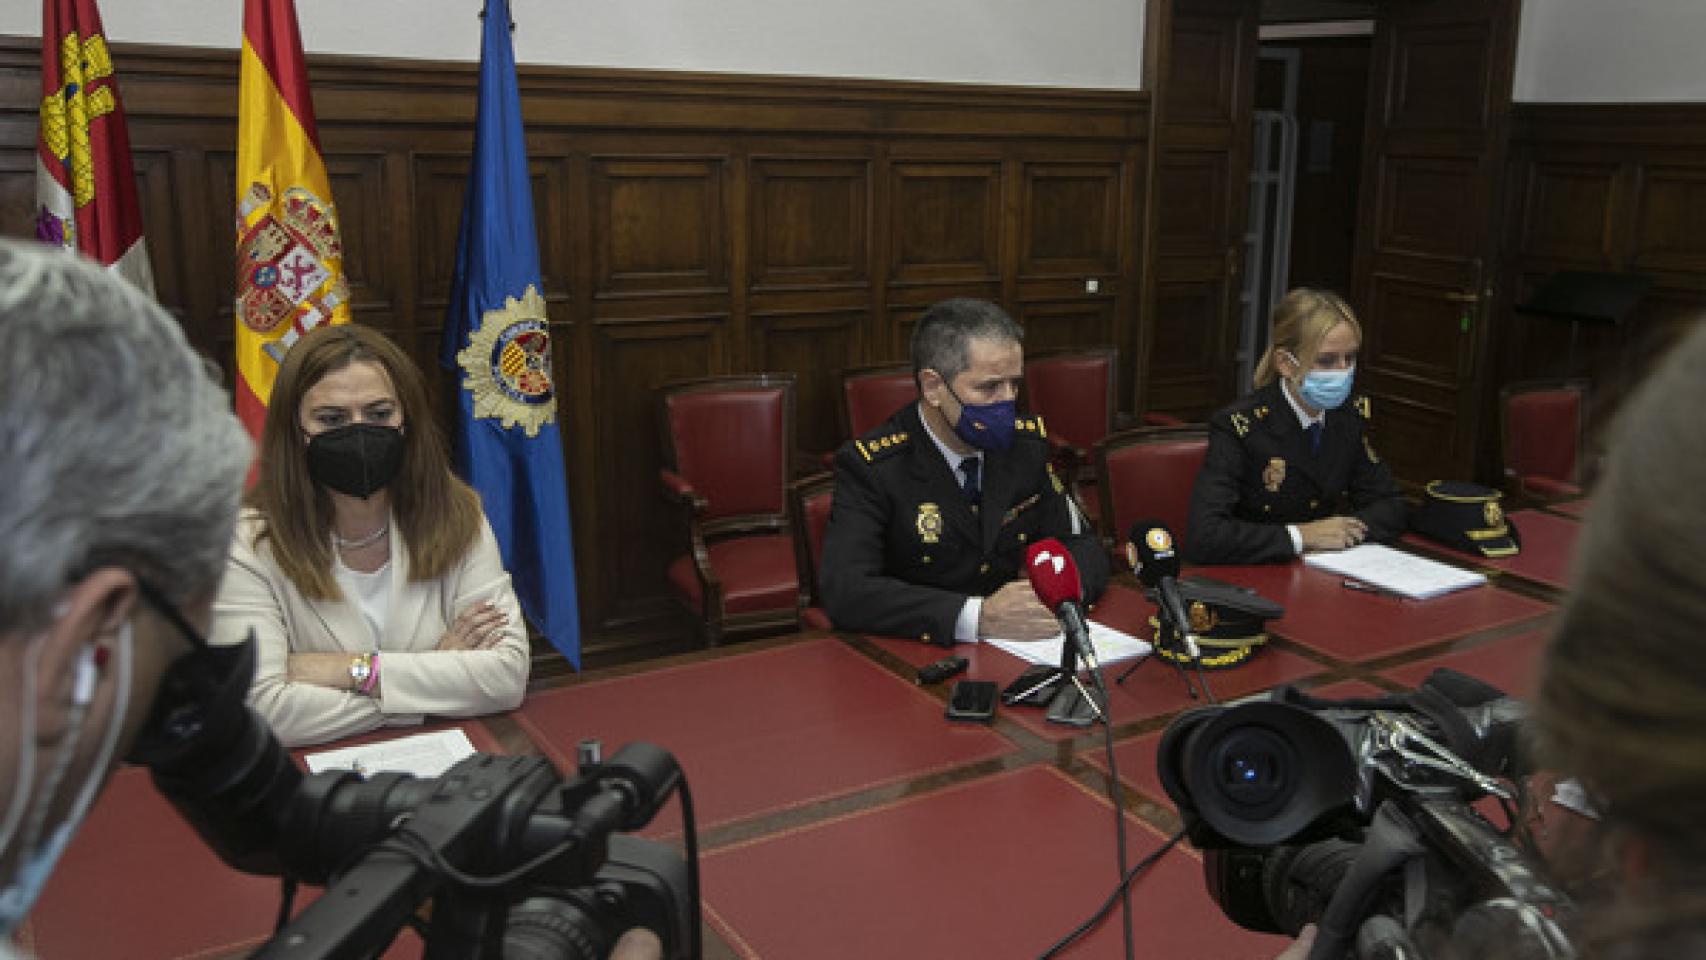 La delegada de Gobierno, Virginia Barcones, informa sobre la operación policial Bachata